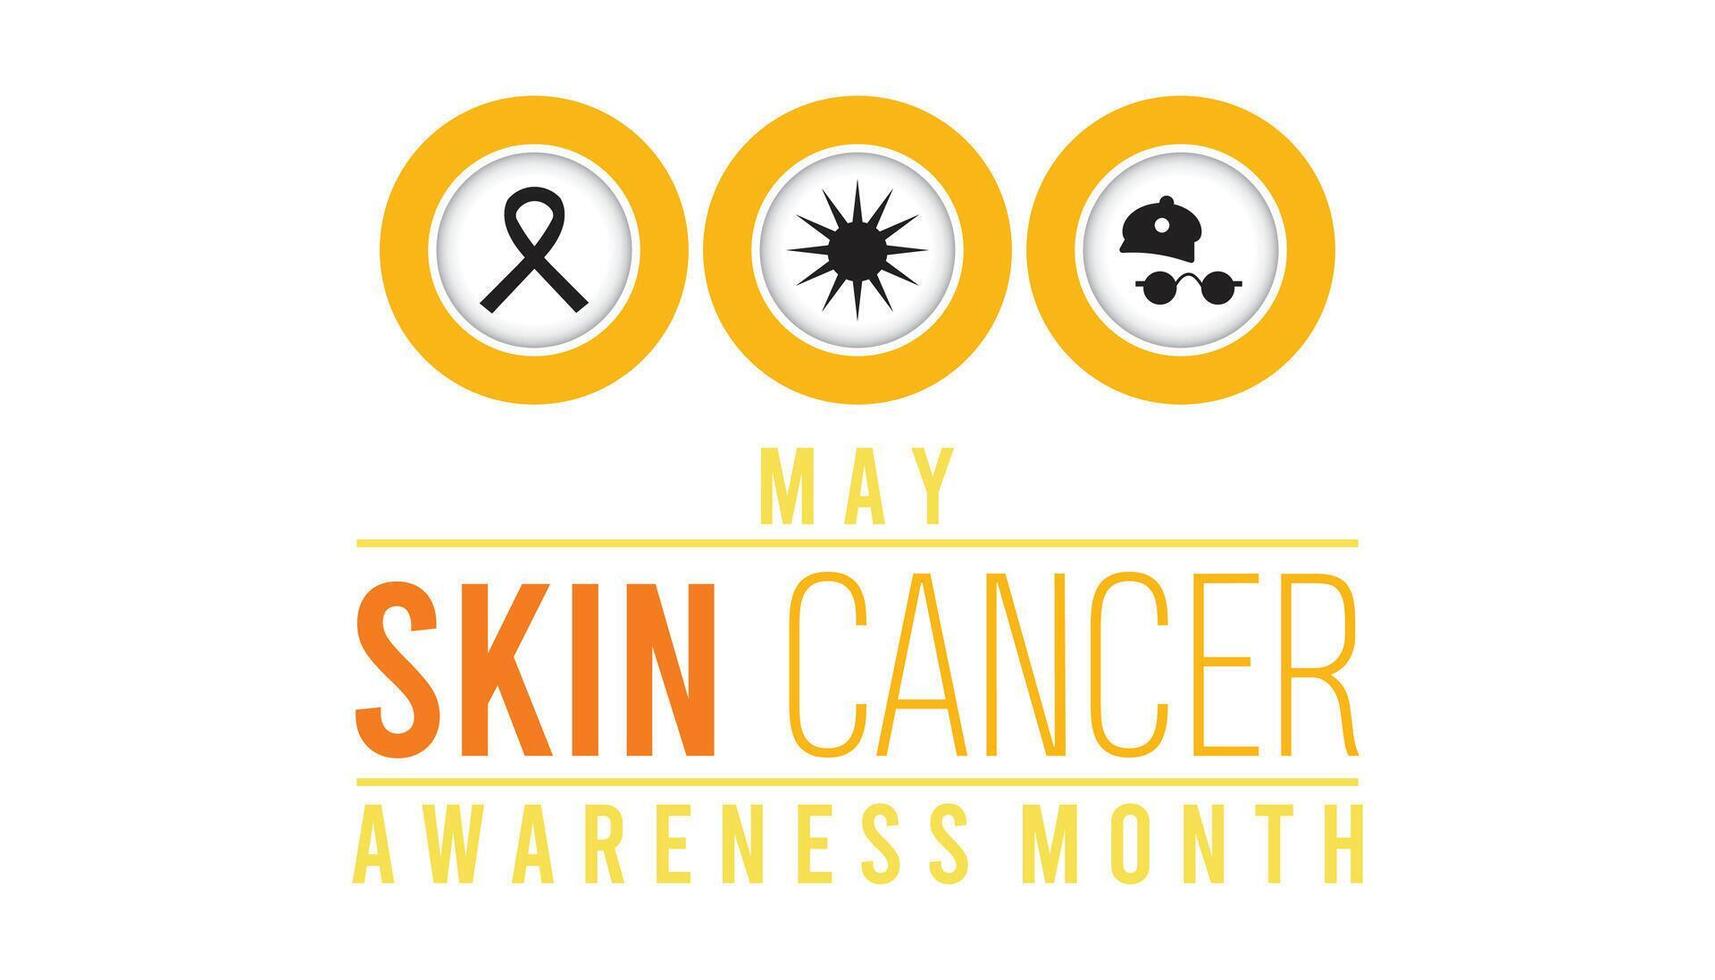 hud cancer förebyggande och medvetenhet månad observerats varje år i Maj. mall för bakgrund, baner, kort, affisch med text inskrift. vektor